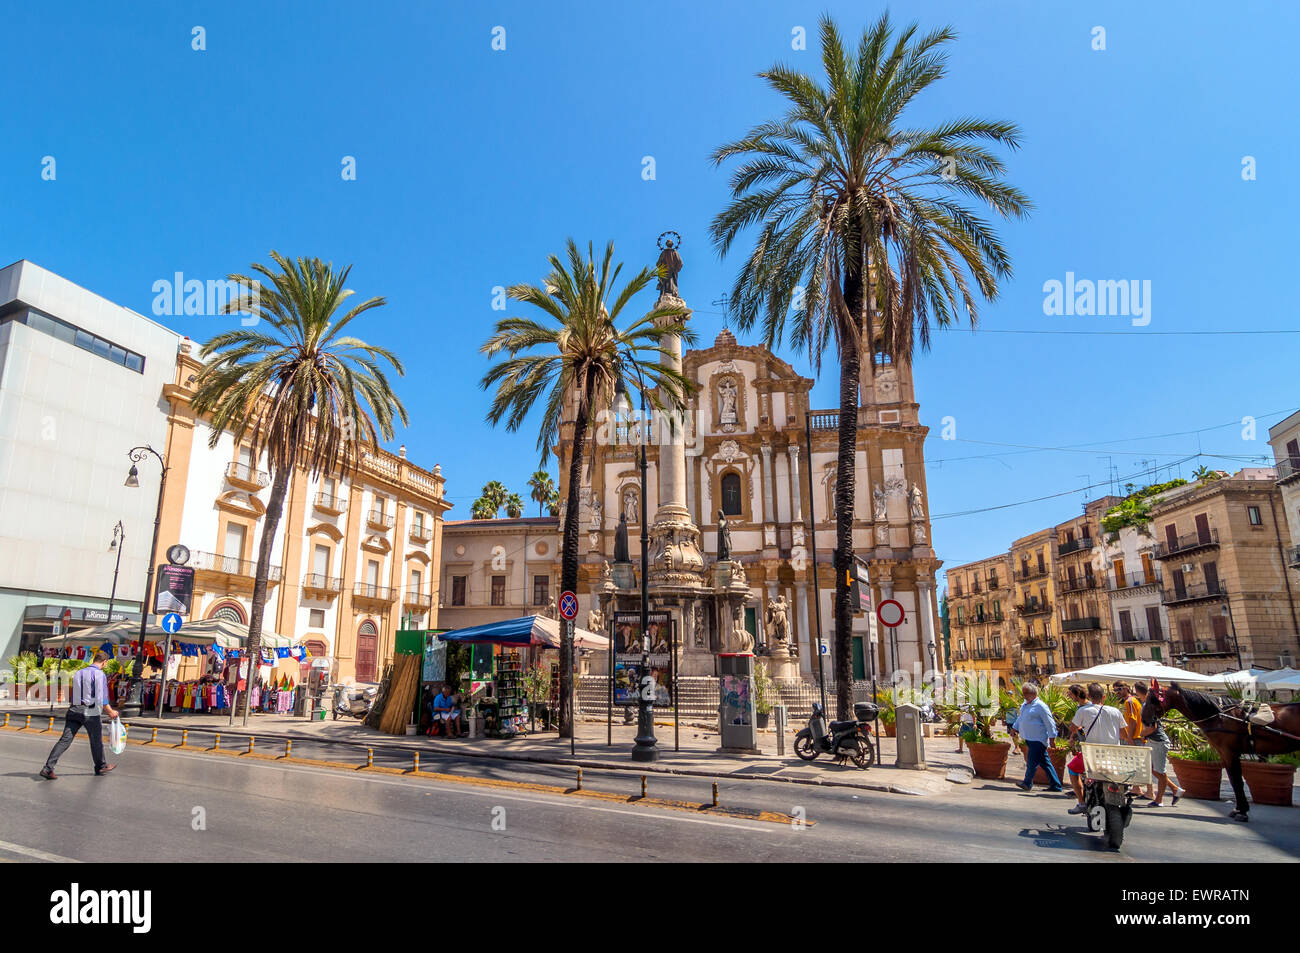 PALERMO, Italia - Agosto 16, 2014: los turistas en la plaza e iglesia de San Domenico en Palermo, Italia. Foto de stock